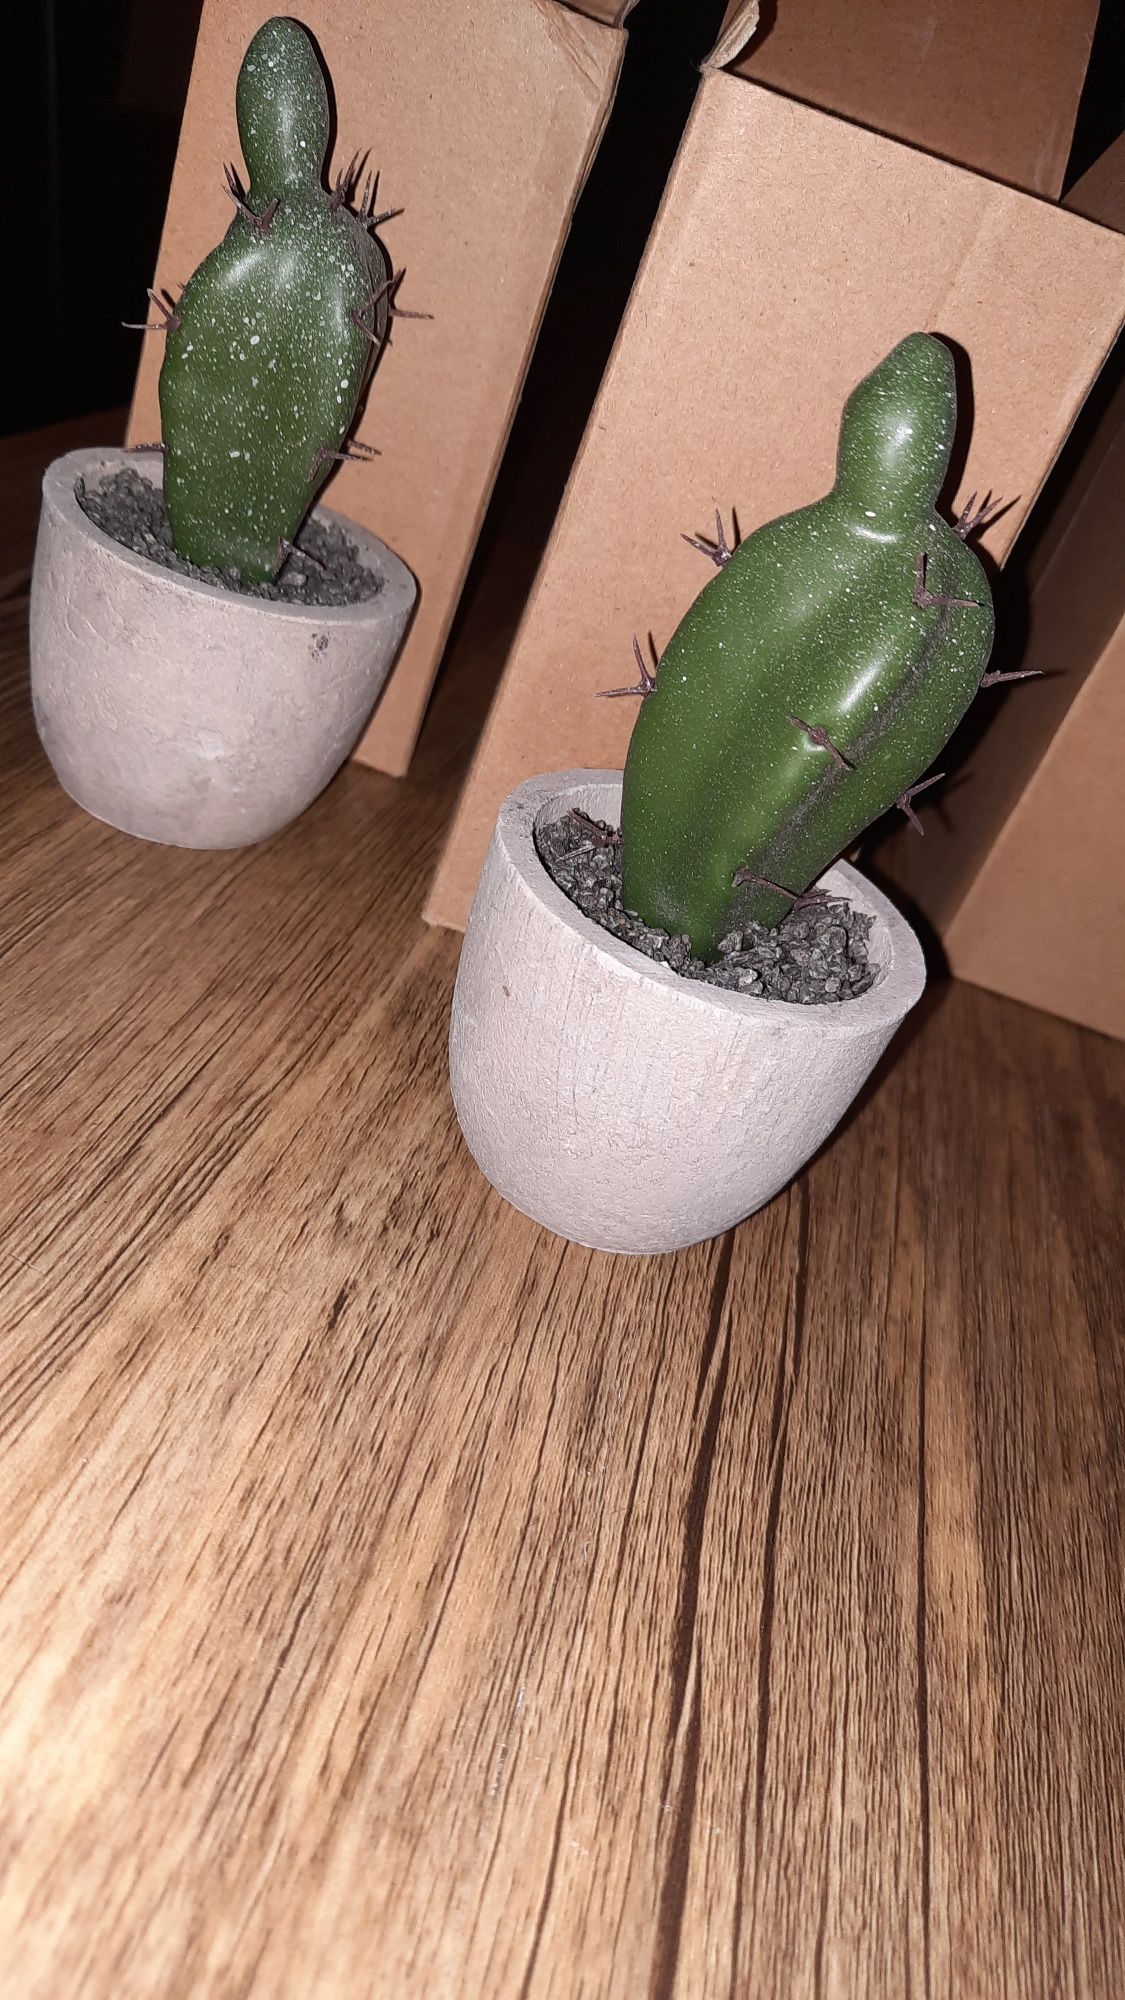 Maly kaktus w doniczce 2 sztuki